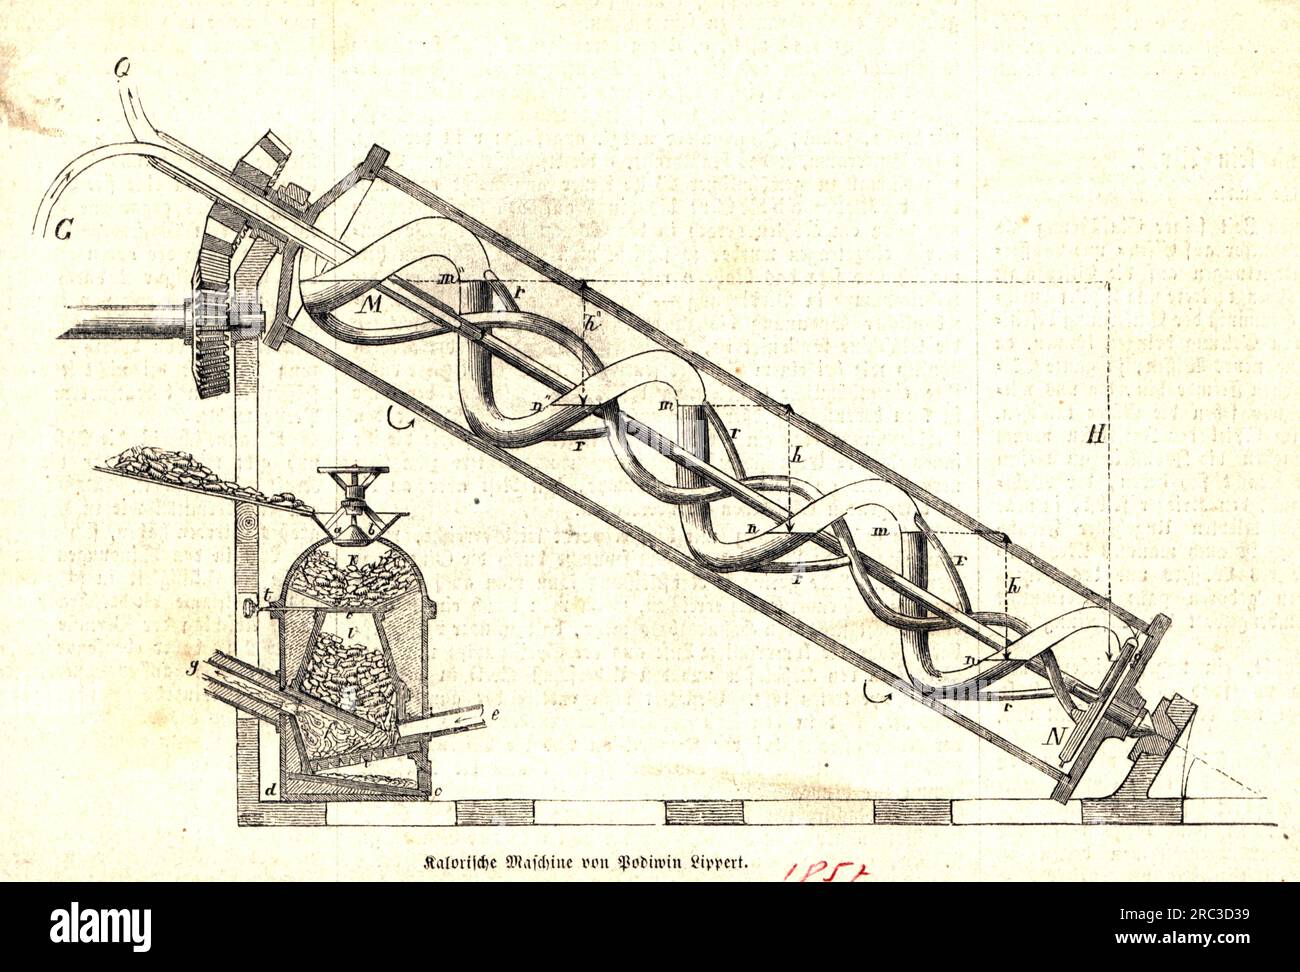 tecniche, macchinari, calorie di Podiwin Lippert, incisione su legno, "Illustrirte Chronik", 1859, COPYRIGHT DELL'ARTISTA NON DEVE ESSERE AUTORIZZATO Foto Stock